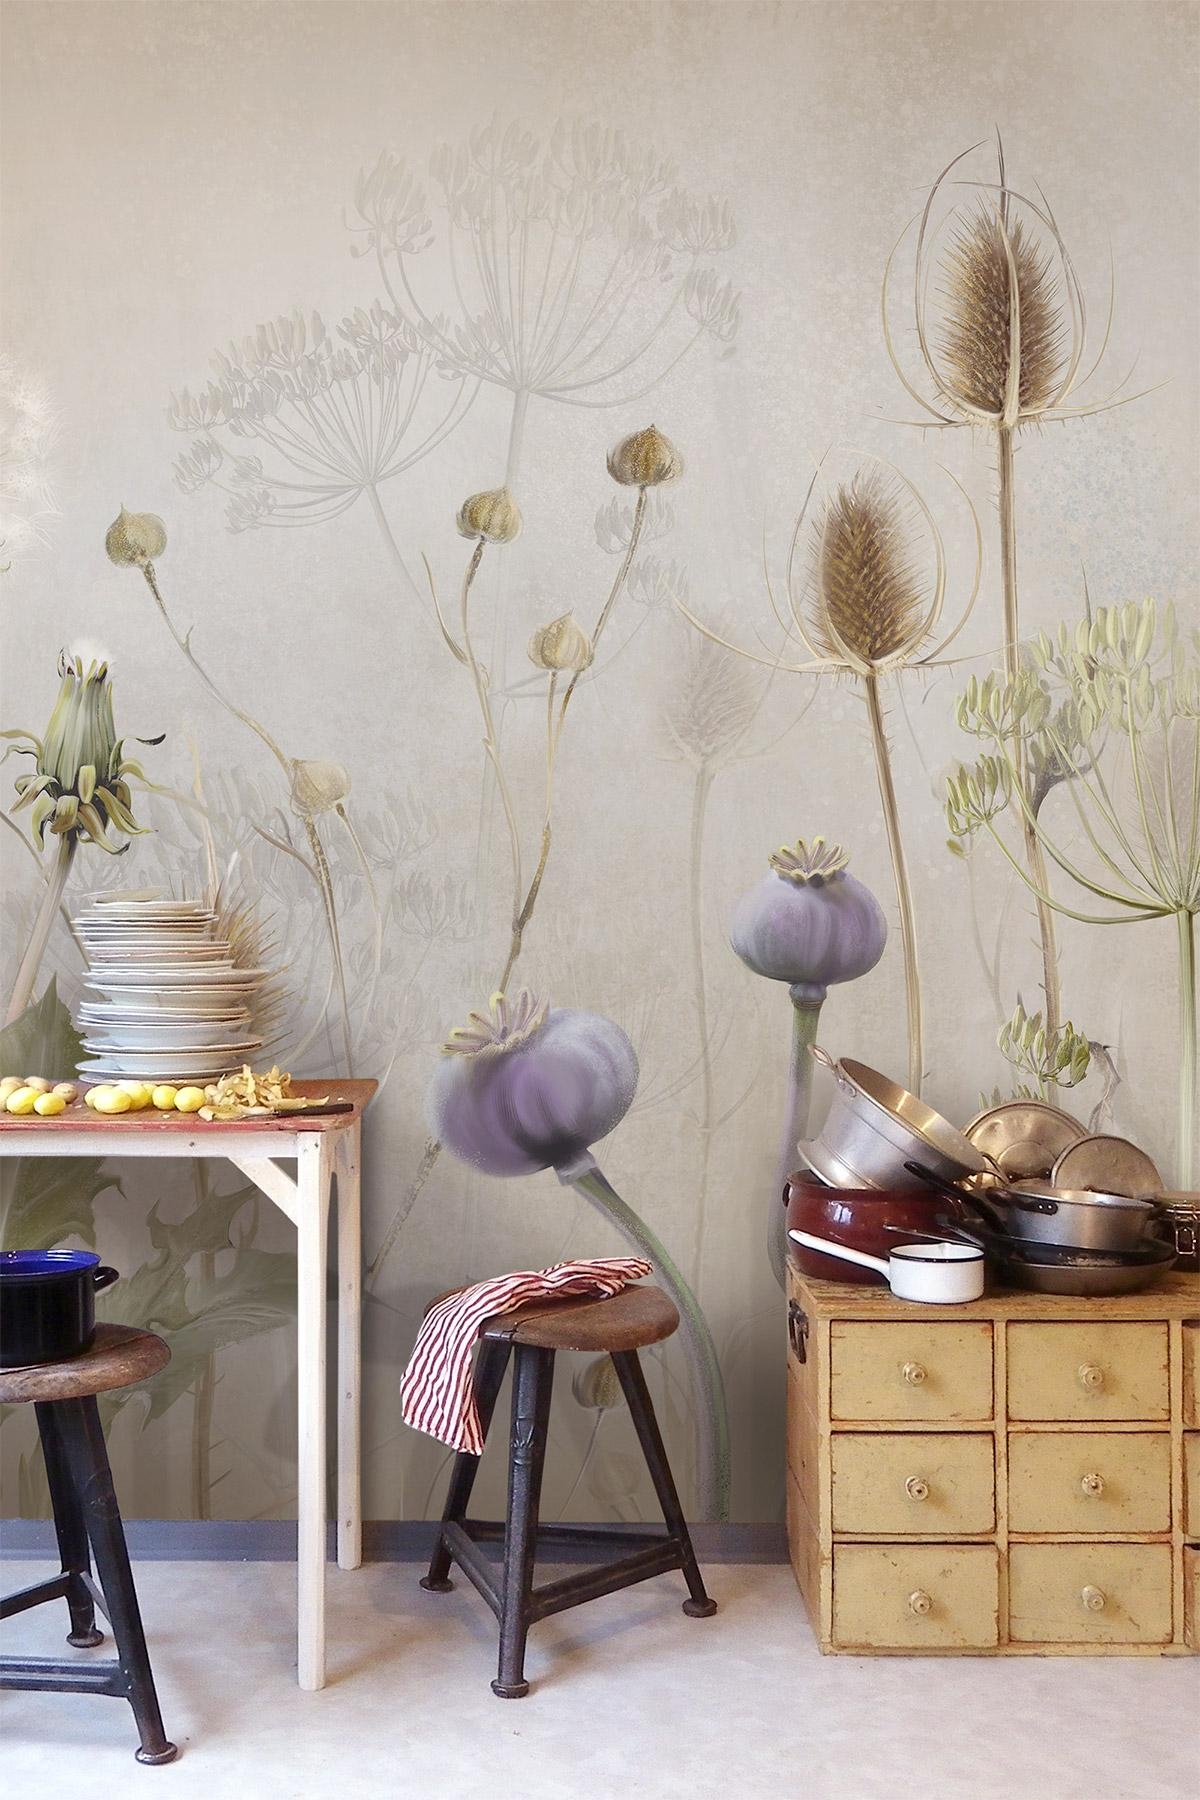 Tapete an der Küchenwand:
Feine Illustrationen von Wildkräutern und Wiesenblumen.
#küche #tapete #vintage #blumen